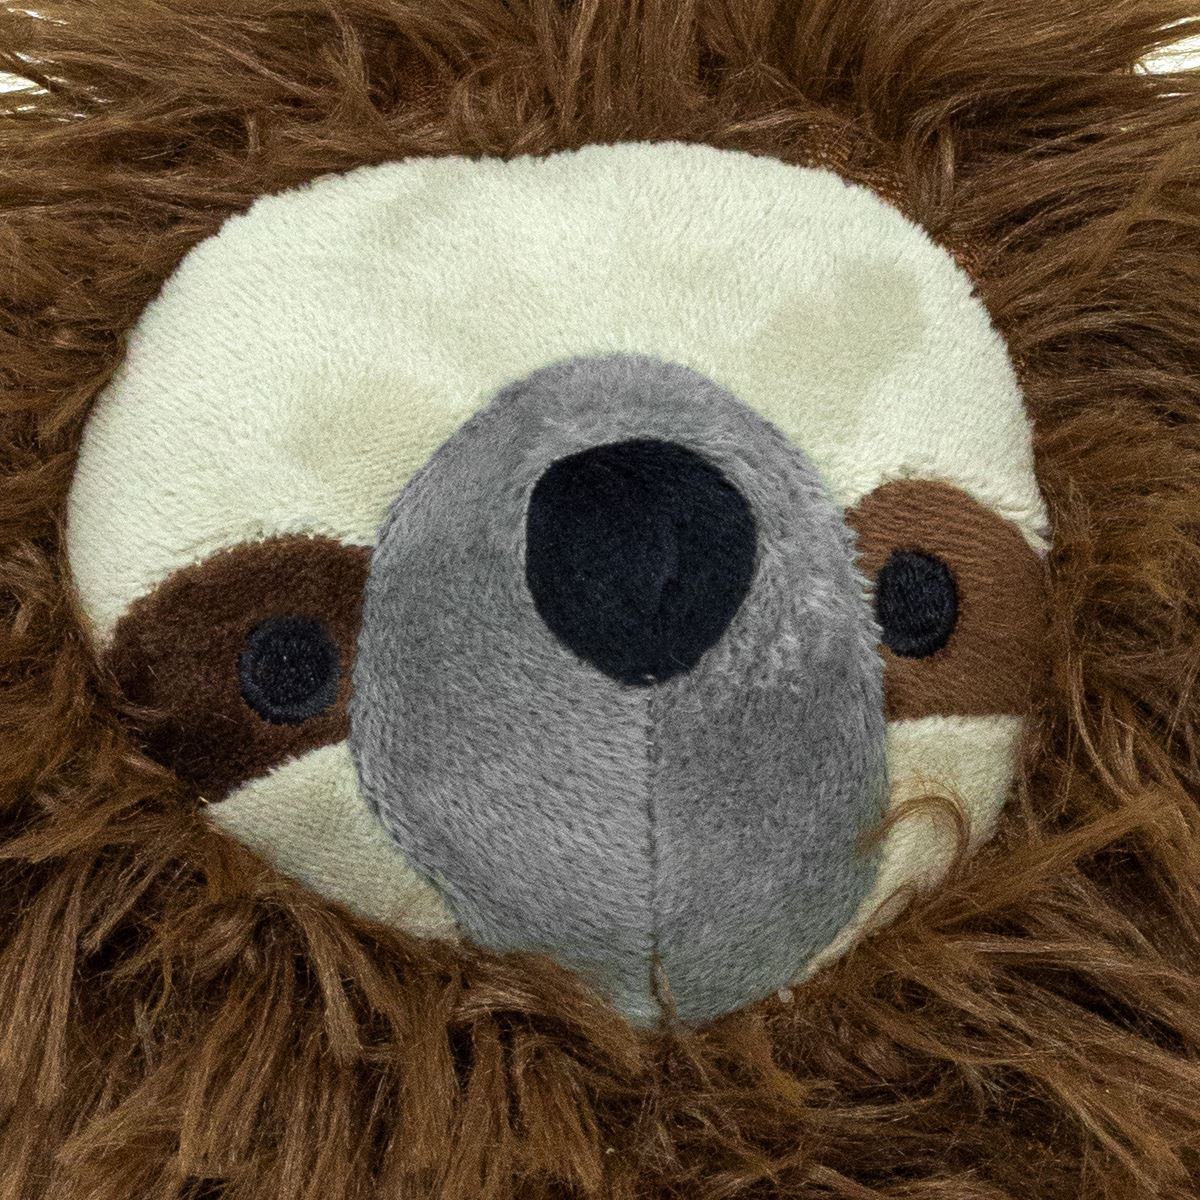 Shaggy Sloth Doorstop | Sloth Shaped Door Stop Fabric Animal Doorstop - Brown